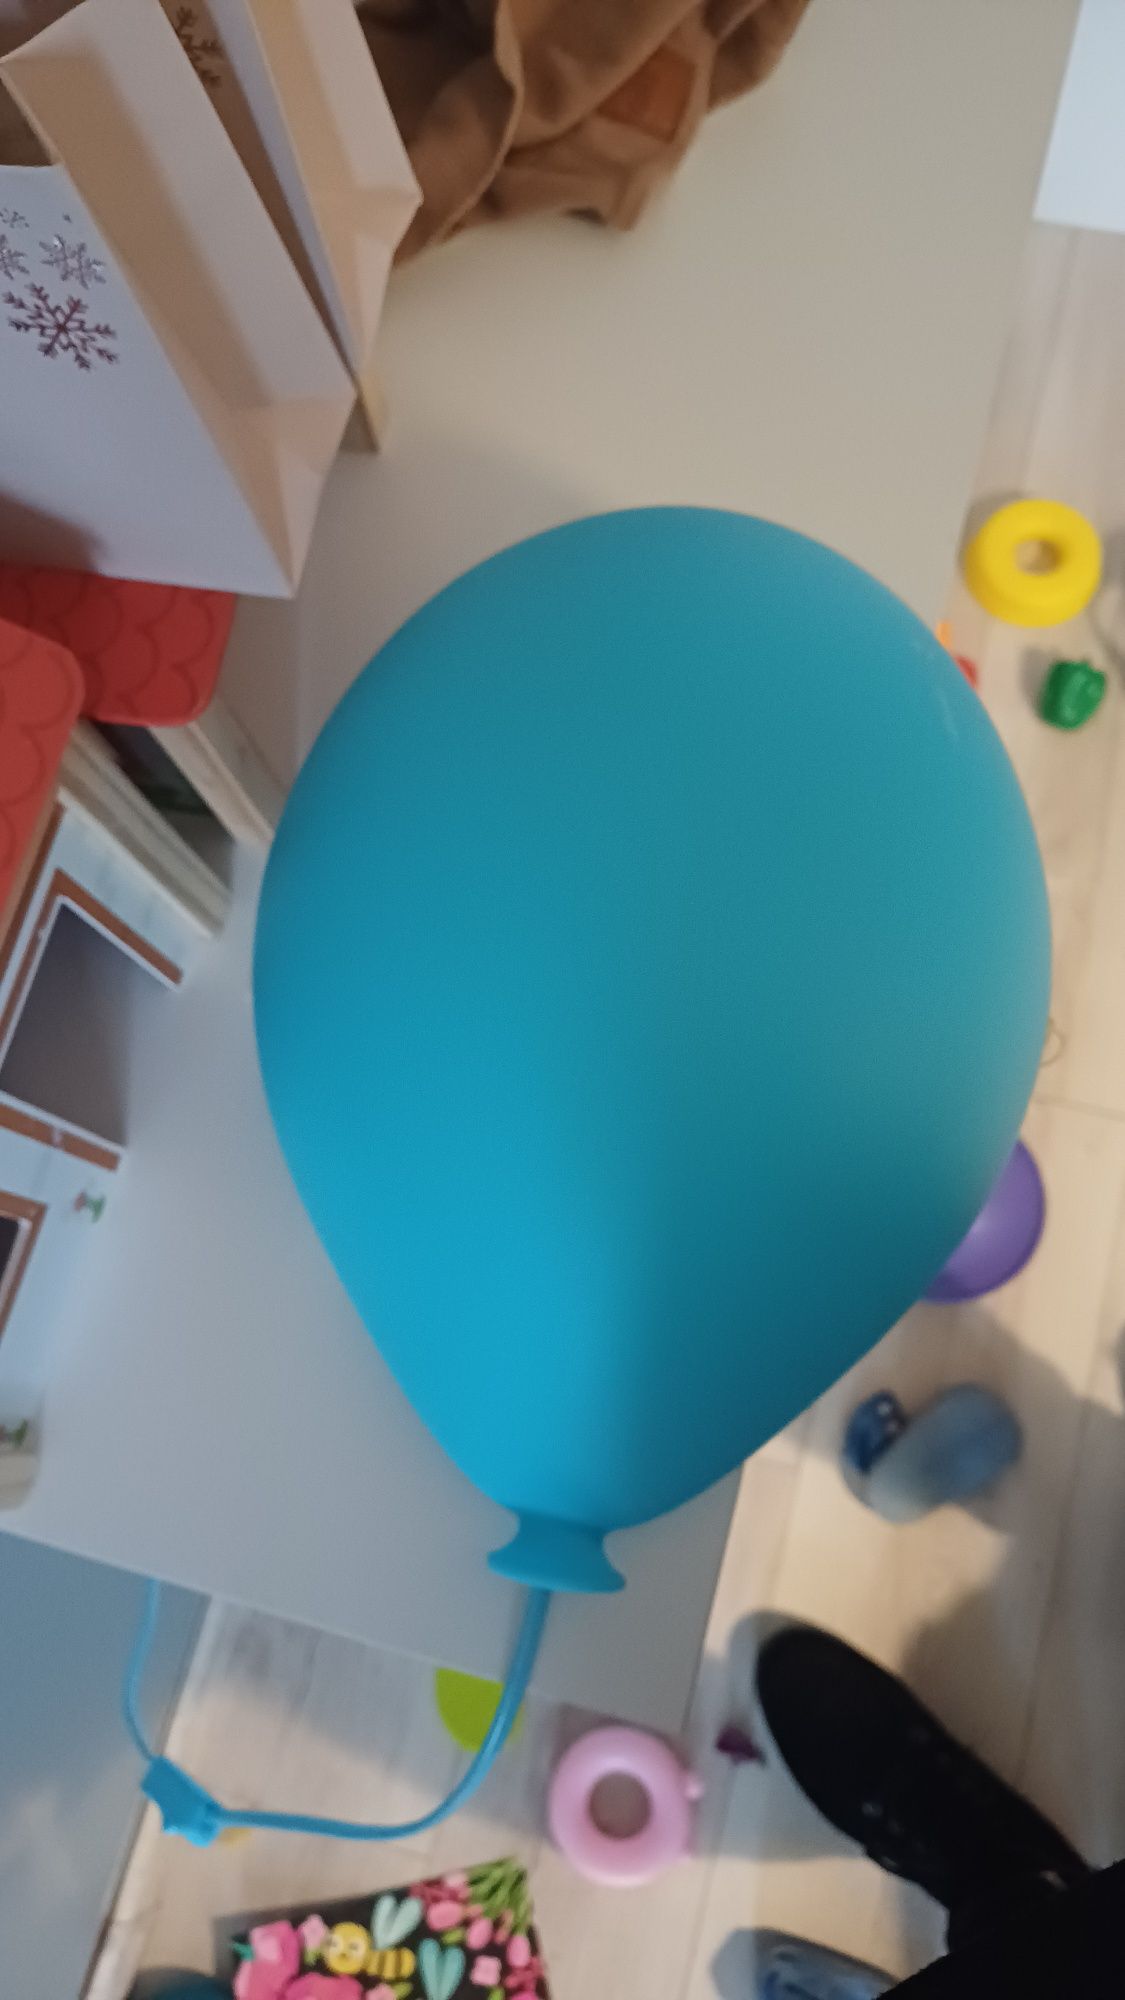 Lampka dziecka w kształcie balona